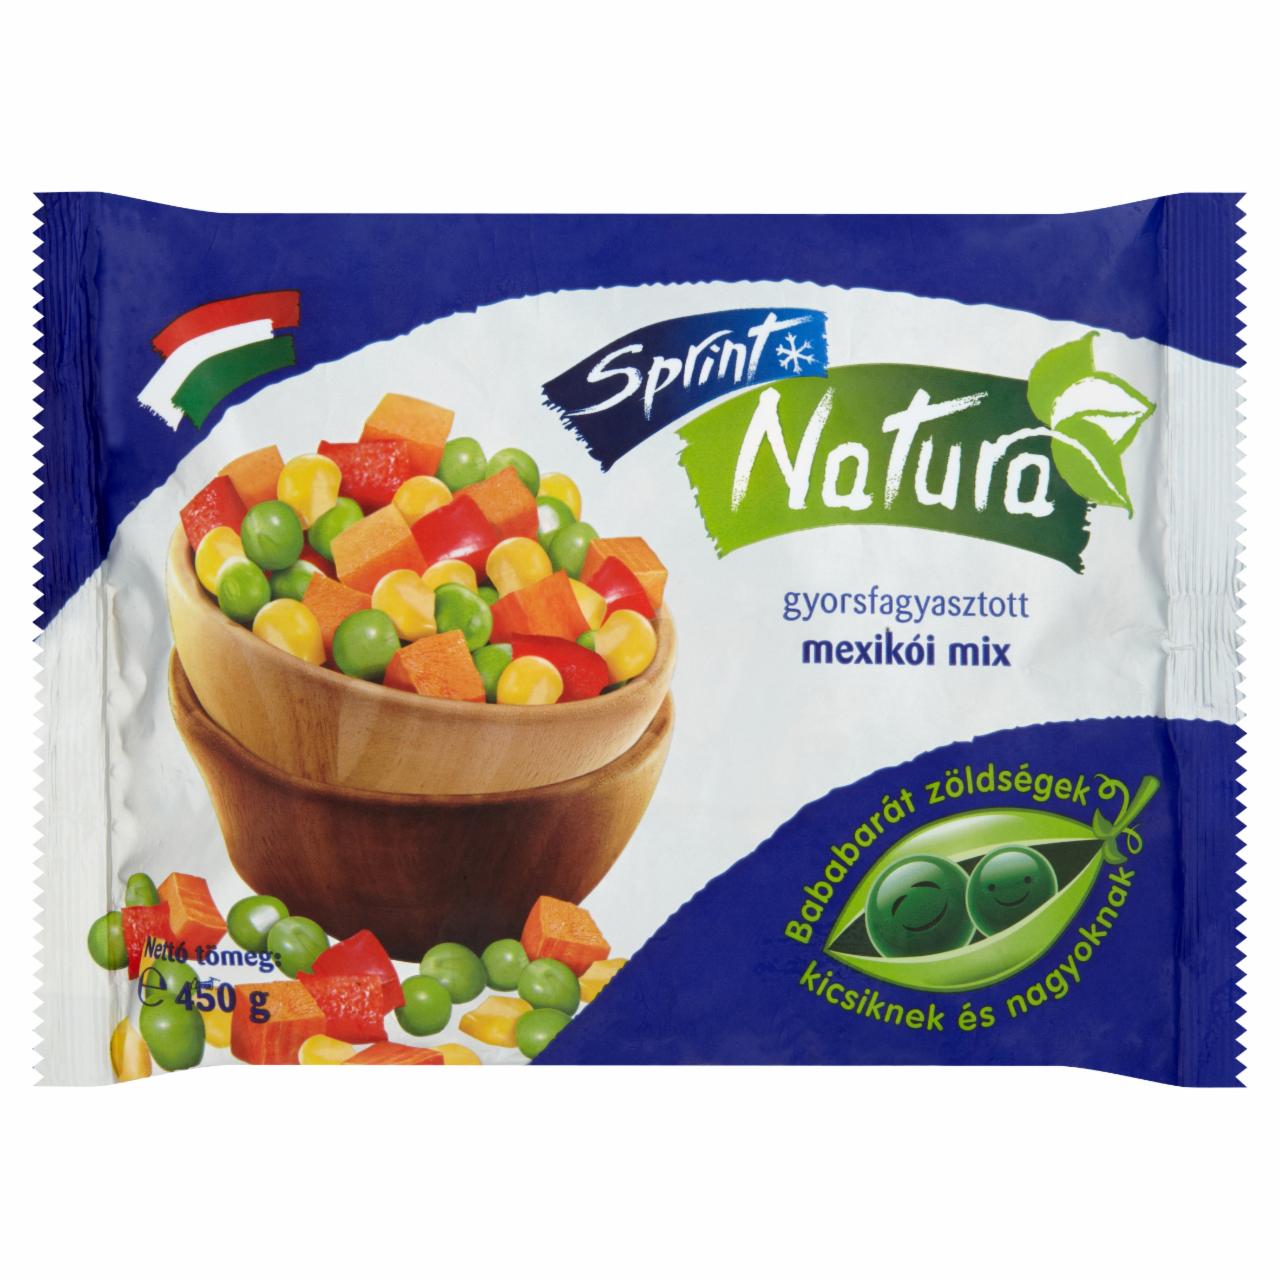 Képek - Sprint Natura gyorsfagyasztott mexikói mix zöldségkeverék 450 g